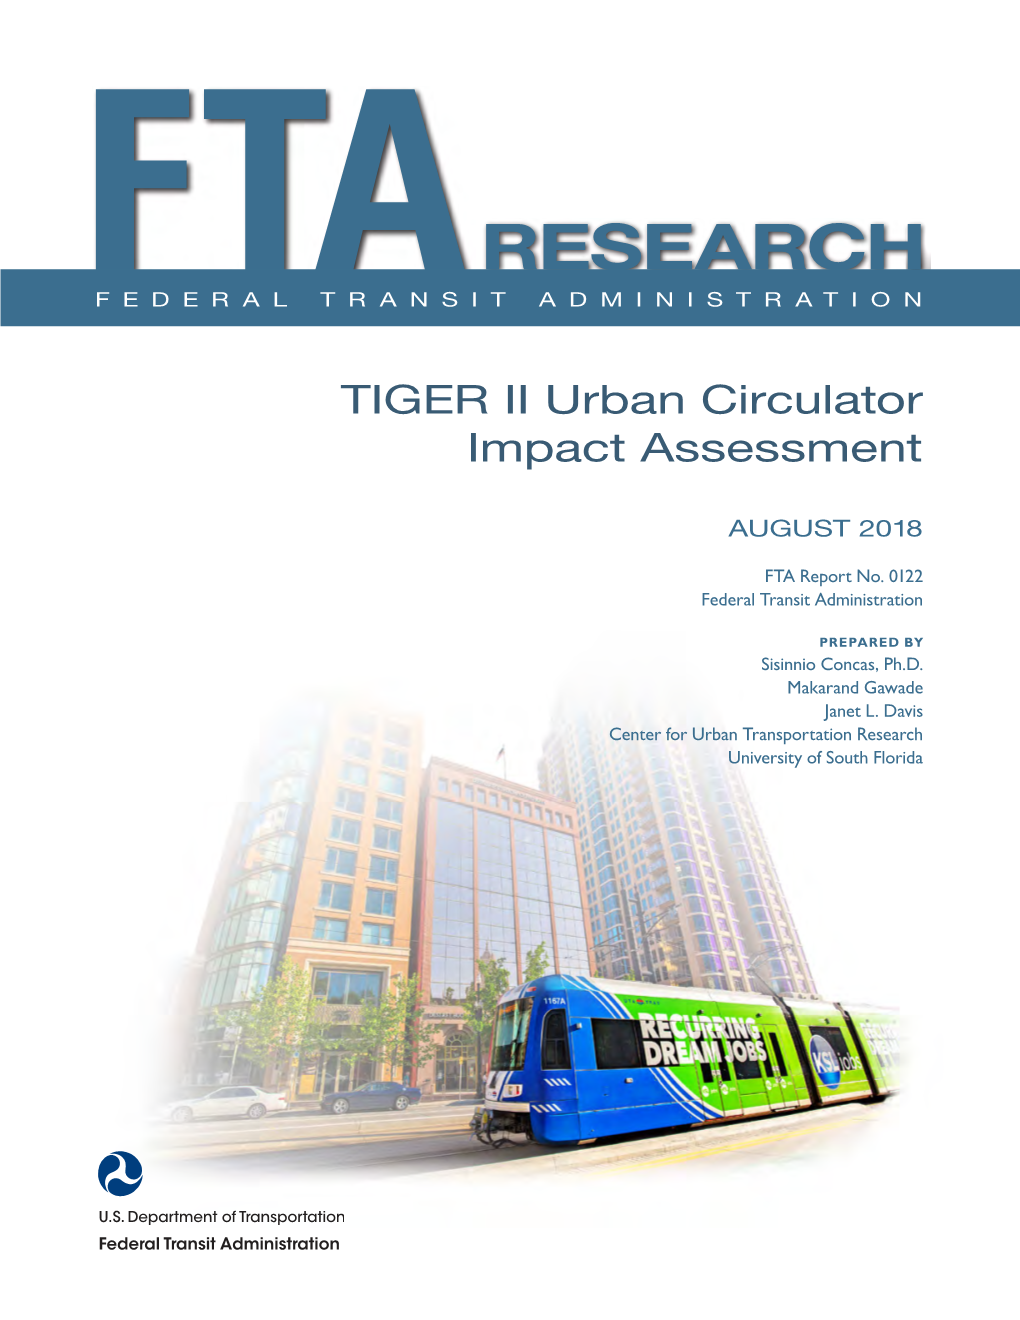 TIGER II Urban Circulator Impact Assessment